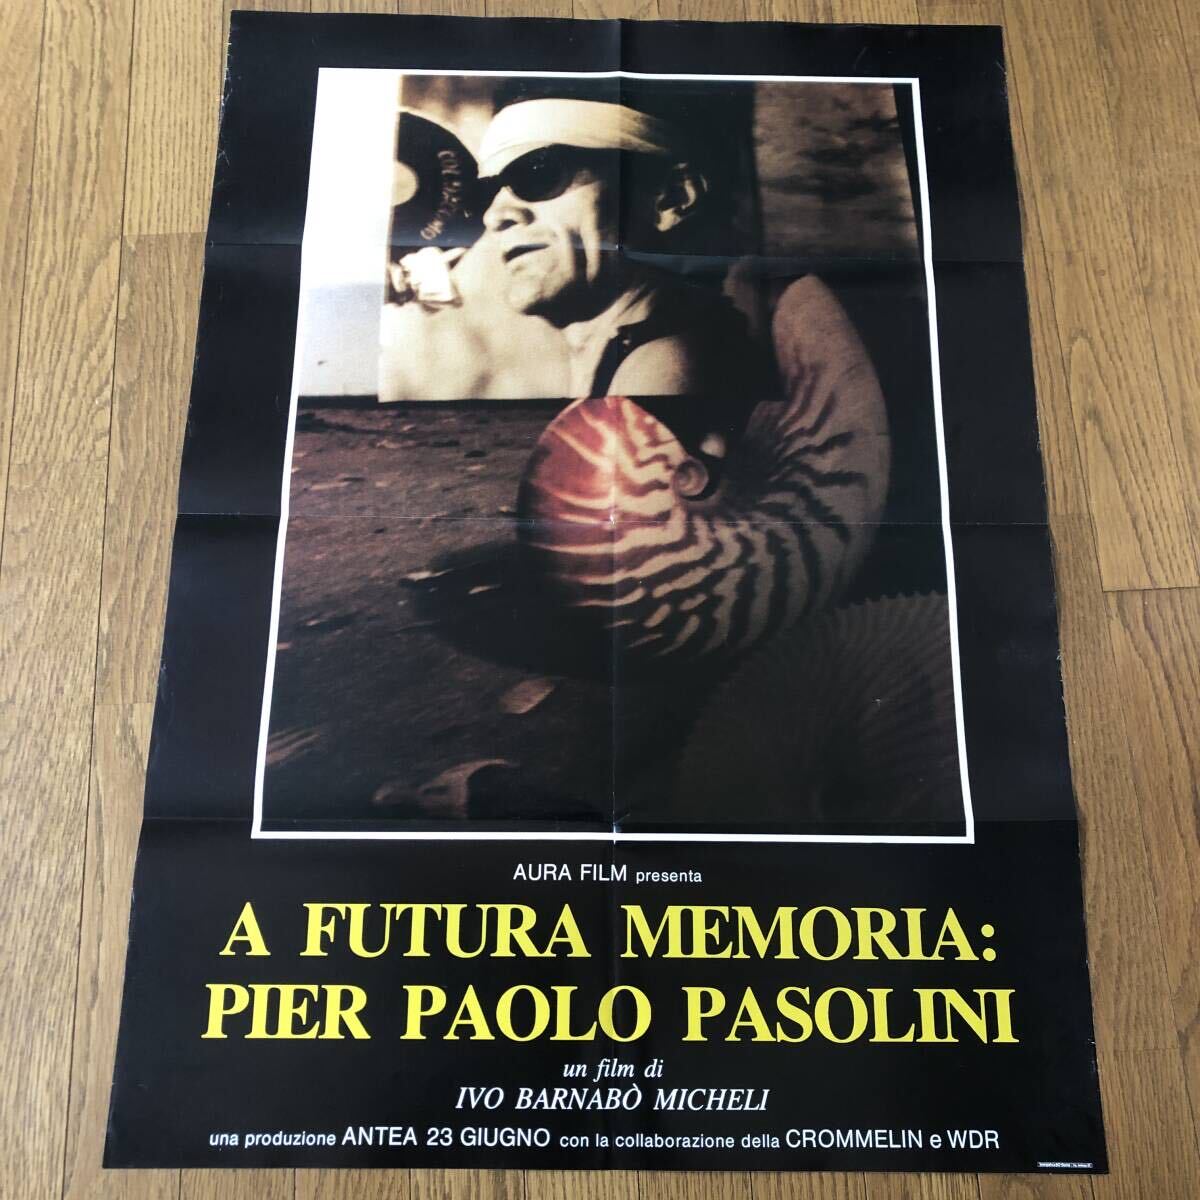 「パゾリーニ・ファイル」イタリア版大型ポスター ワンシート A FUTURA MEMORIA: PIER PAOLO PASOLINI イヴォ・バルナボ・ミケーリ の画像1